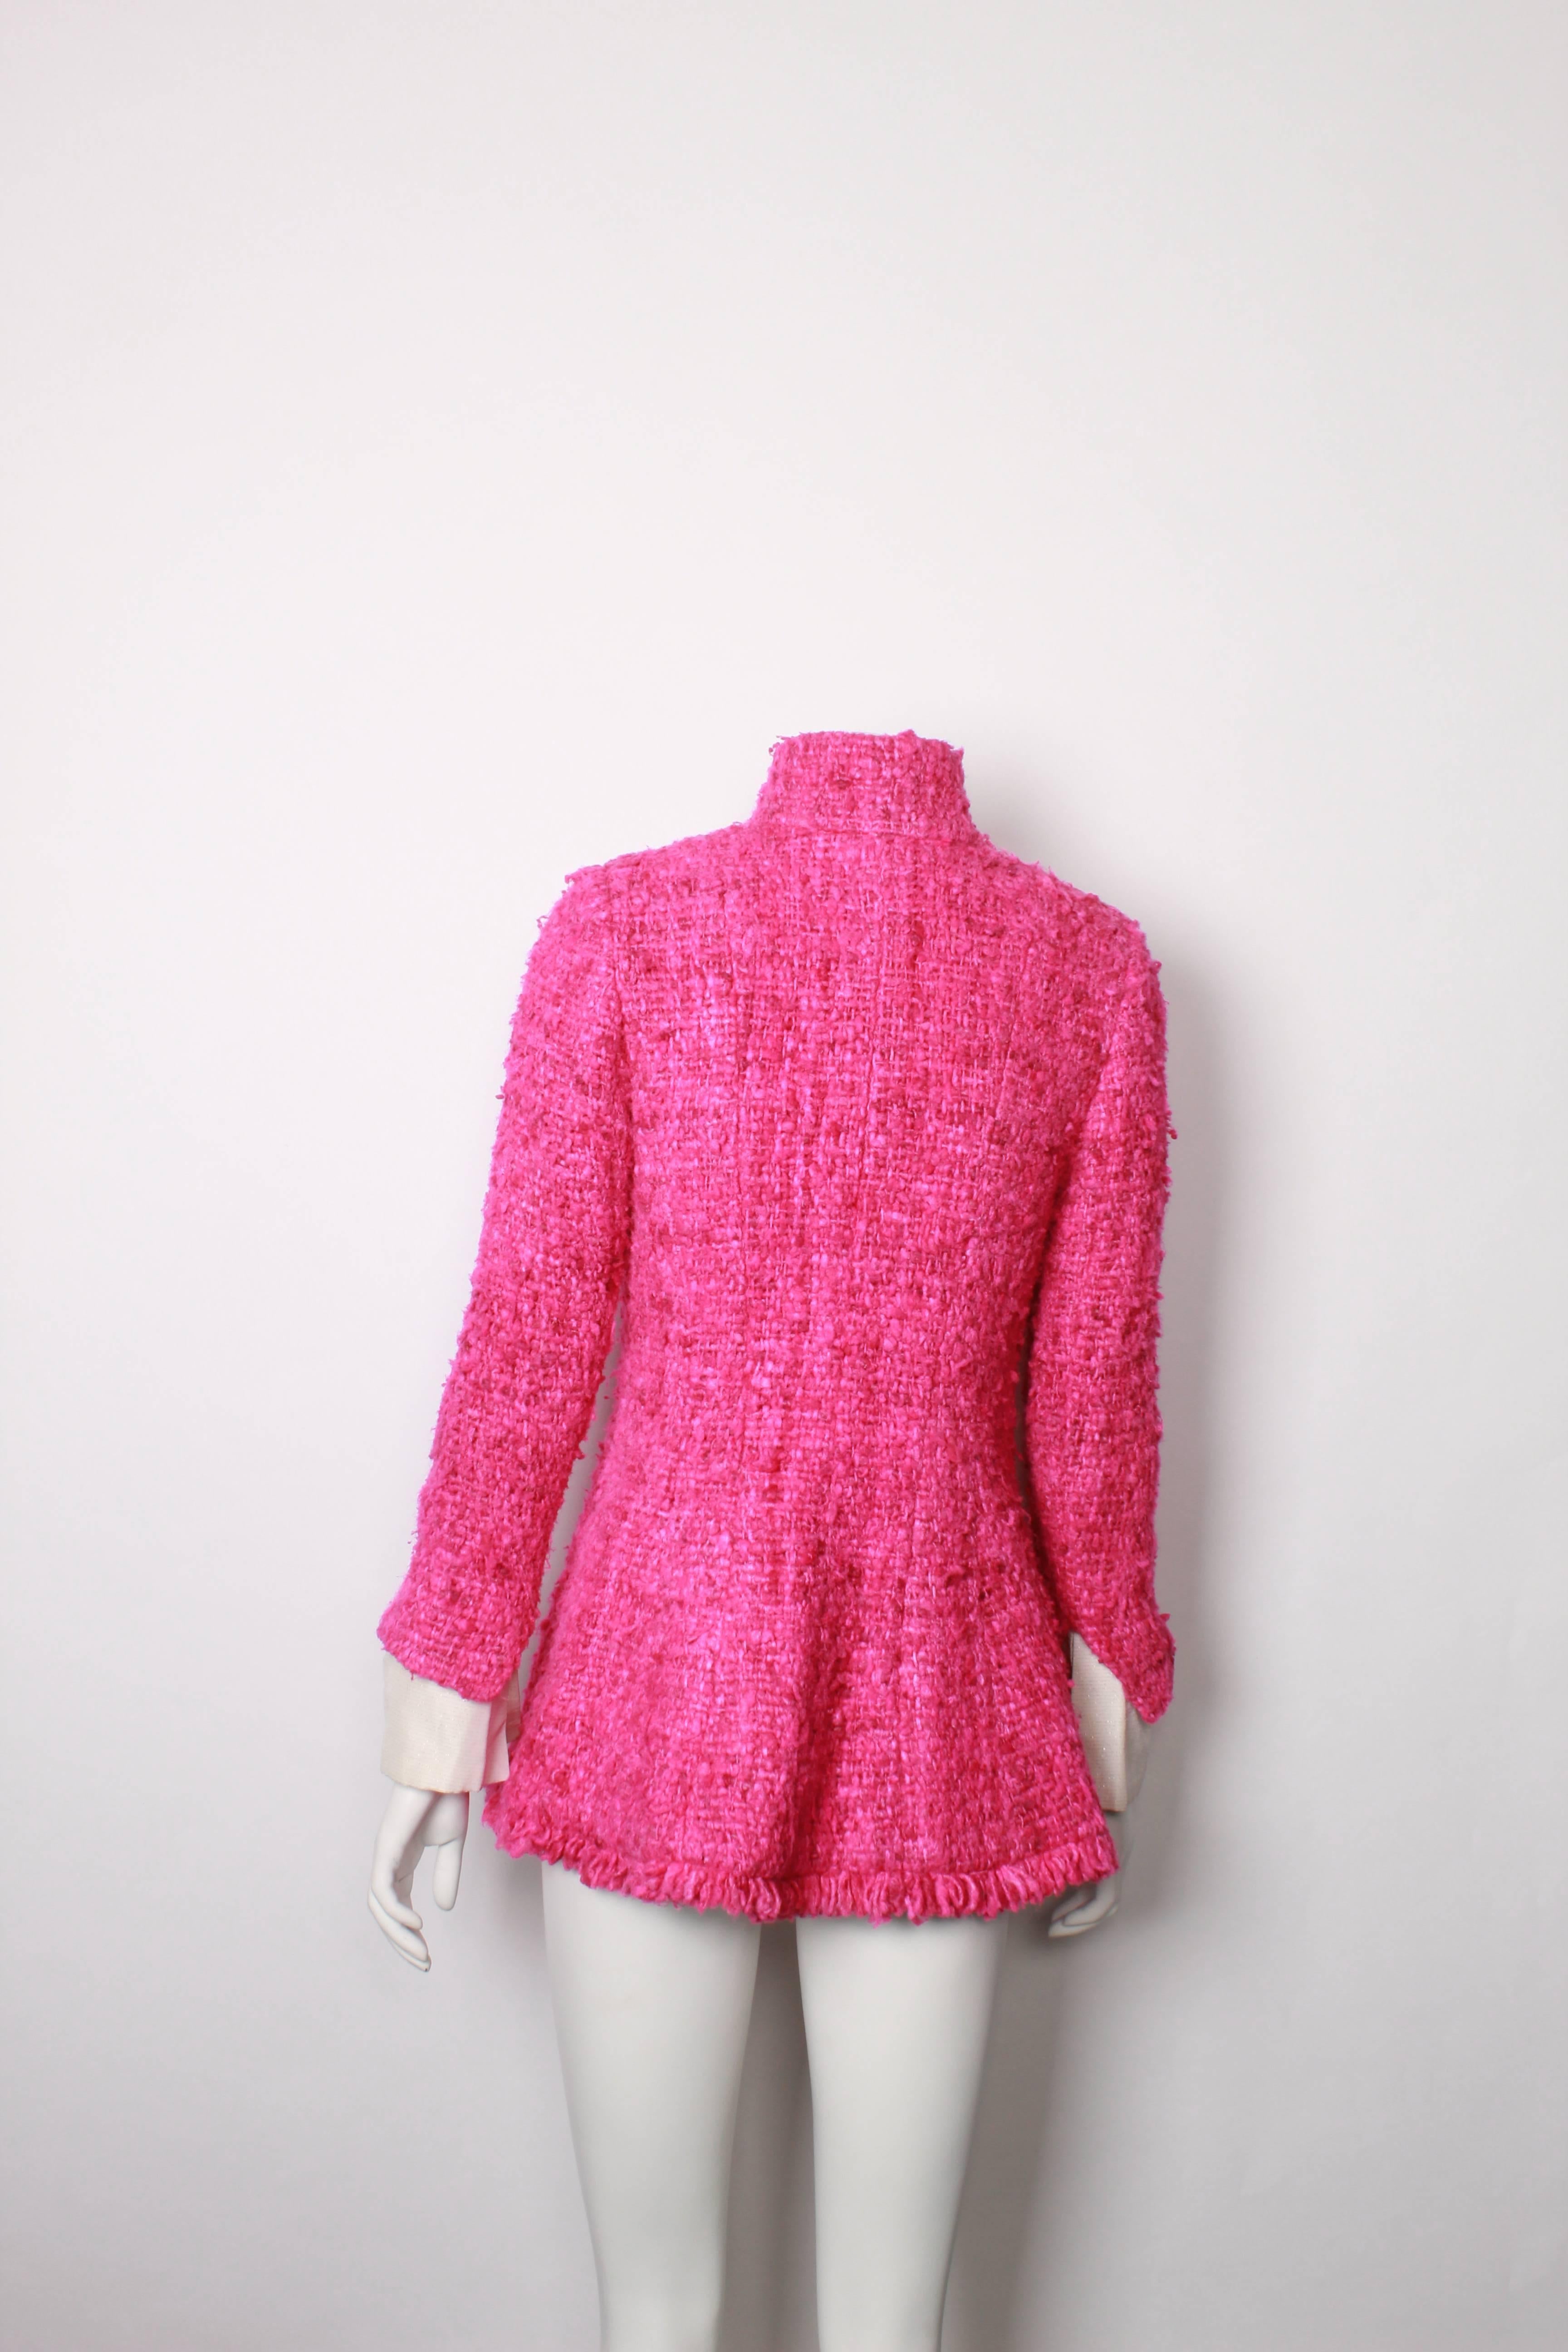 Chanel Maharaja Tweed Jacket, 2012 Collection  1